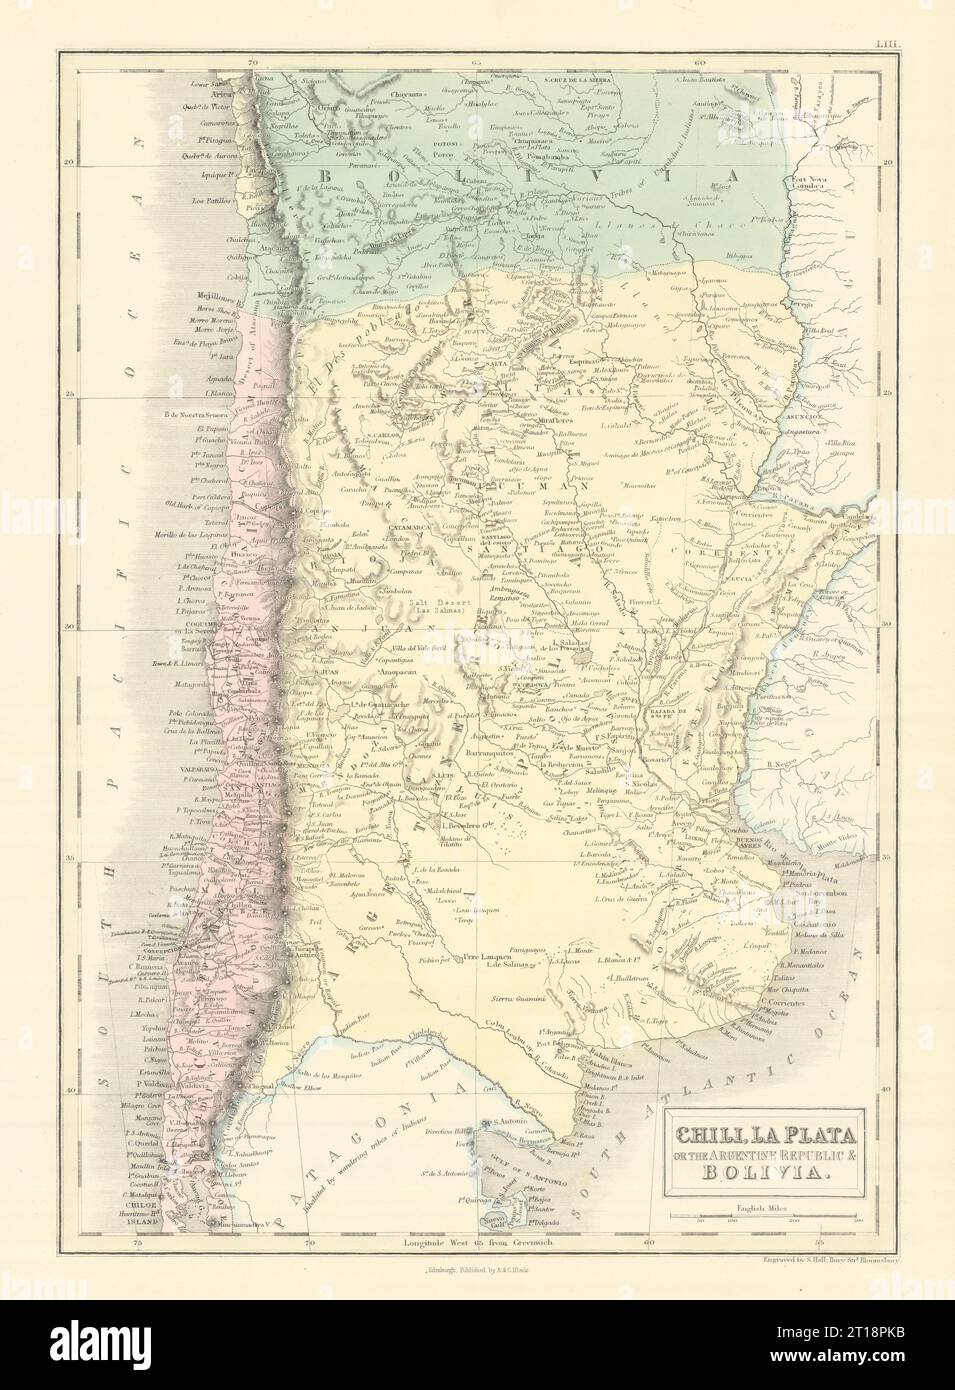 Chili La Plata Argentine Rep. Argentina Bolivia w/Litoral. SIDNEY HALL 1854 map Stock Photo